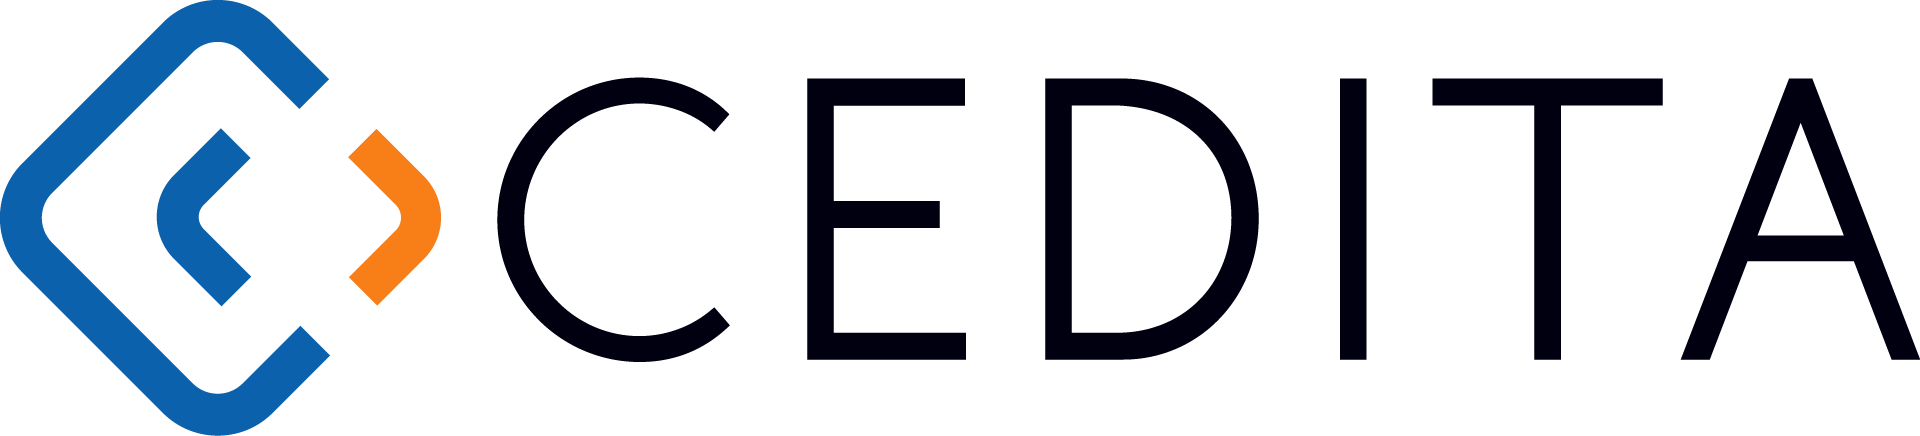 logo for Cedita